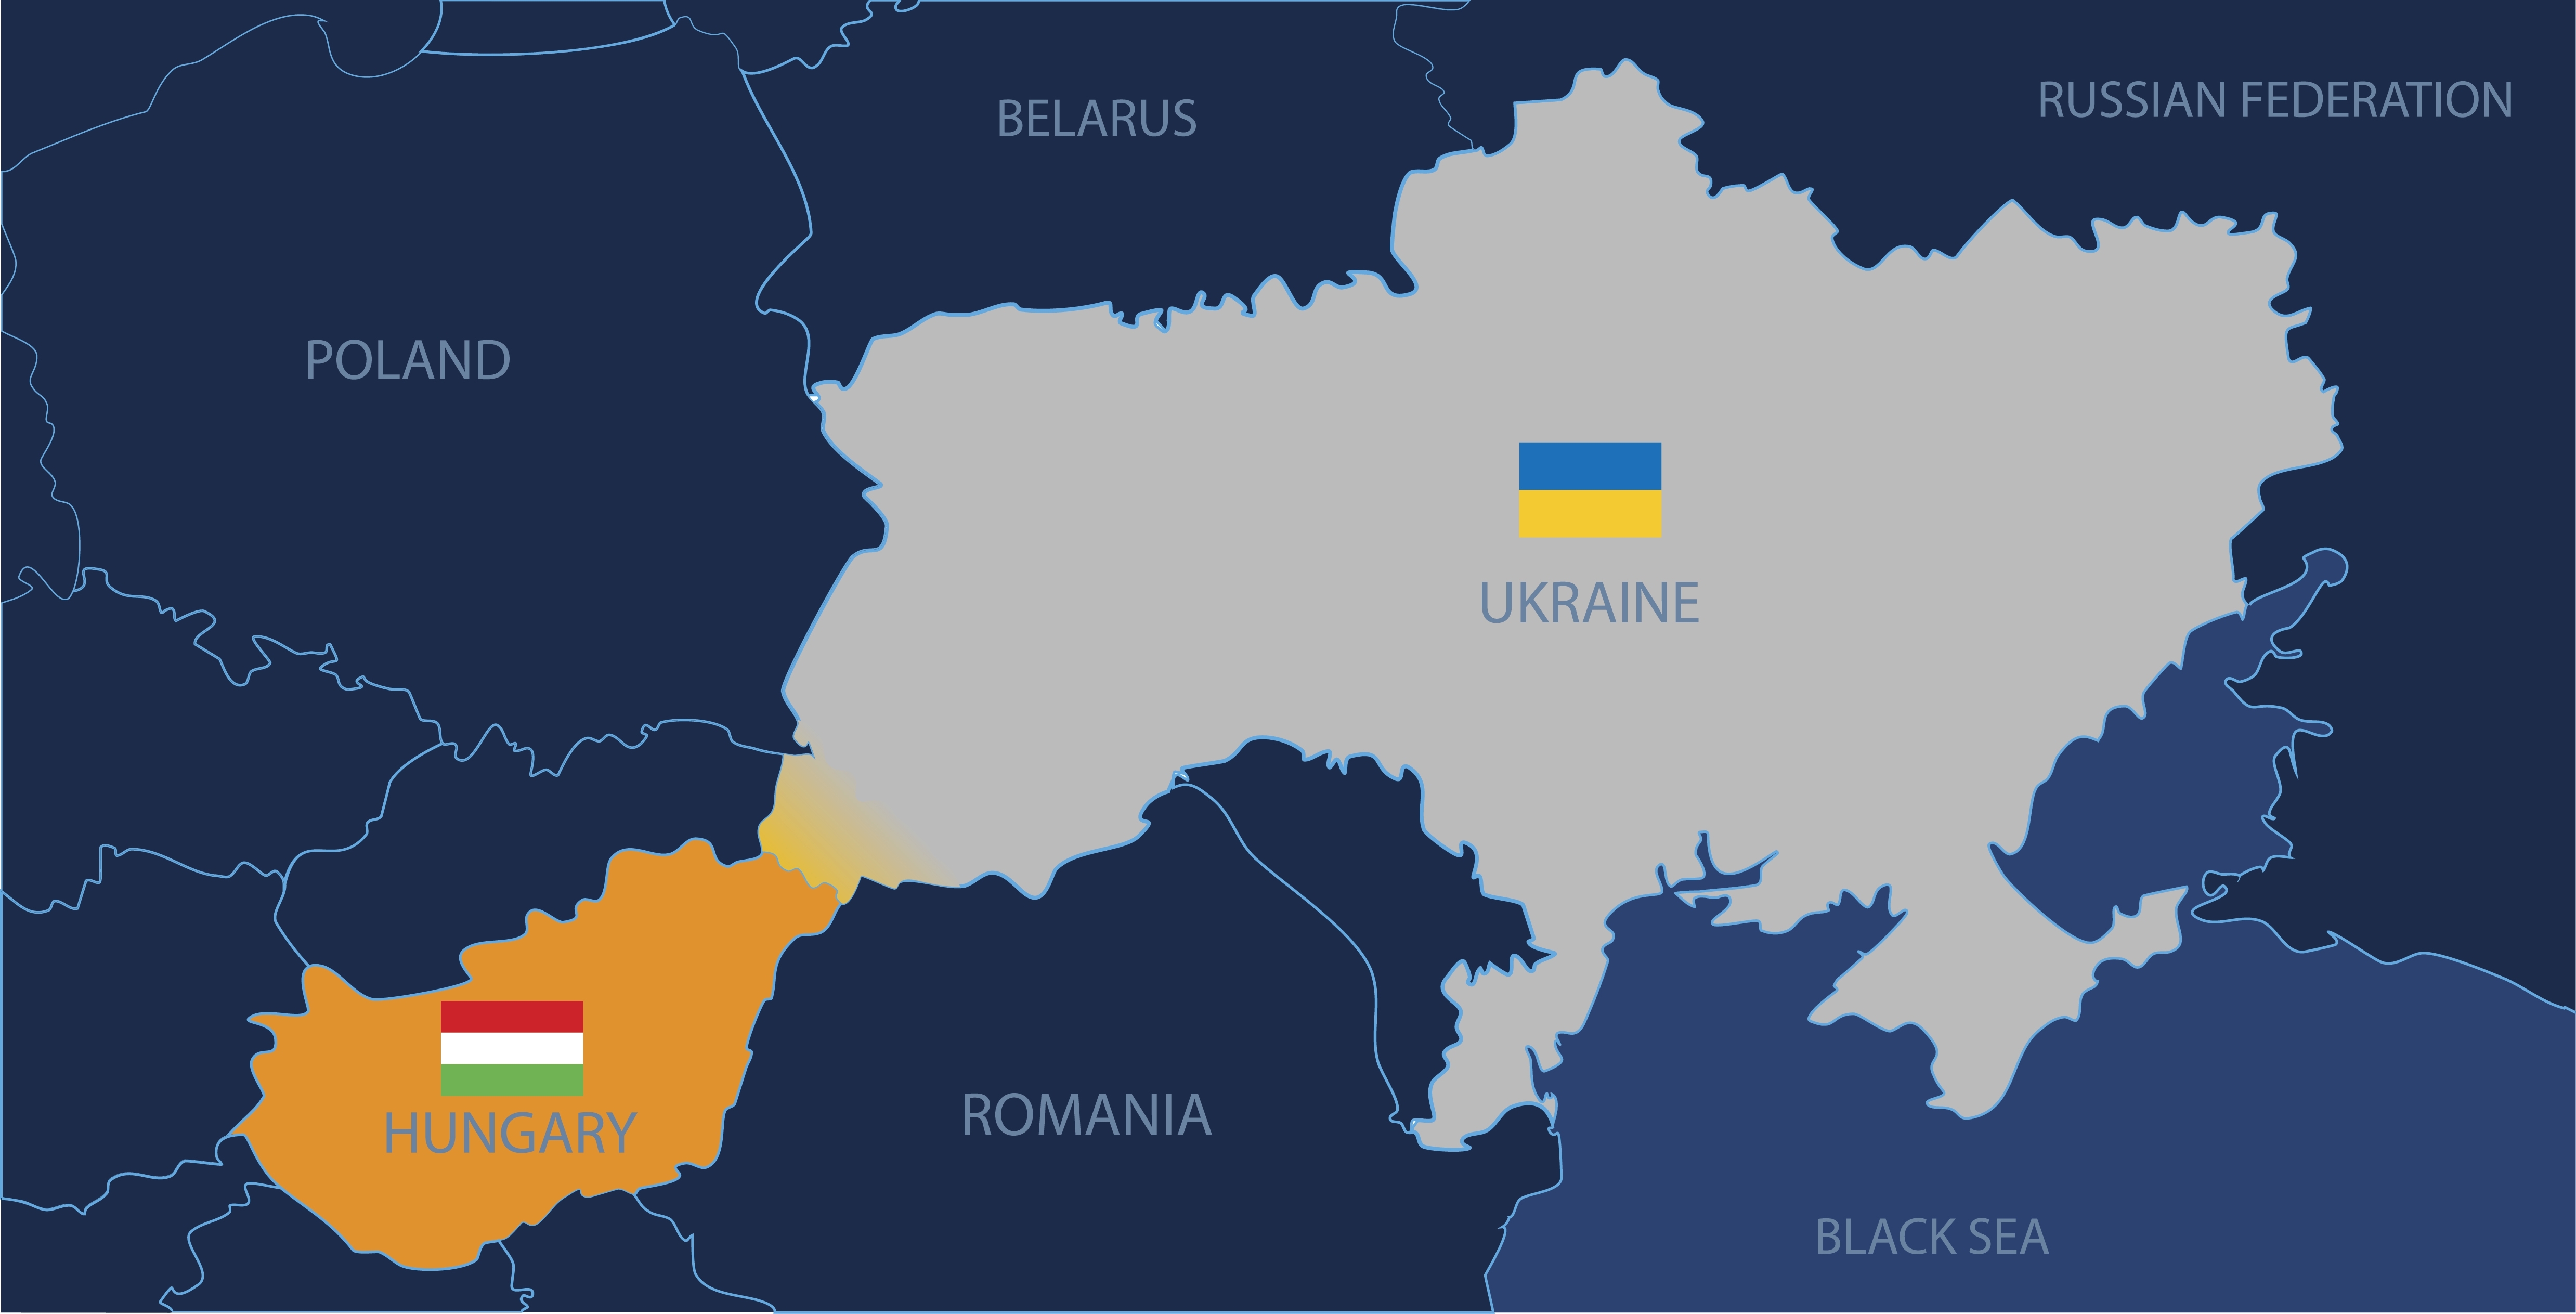 Ούγγροι της Ουκρανίας: Πώς ο Όρμπαν χειραγωγεί την Ευρώπη για να εμποδίσει την ένταξη της Ουκρανίας στην ΕΕ